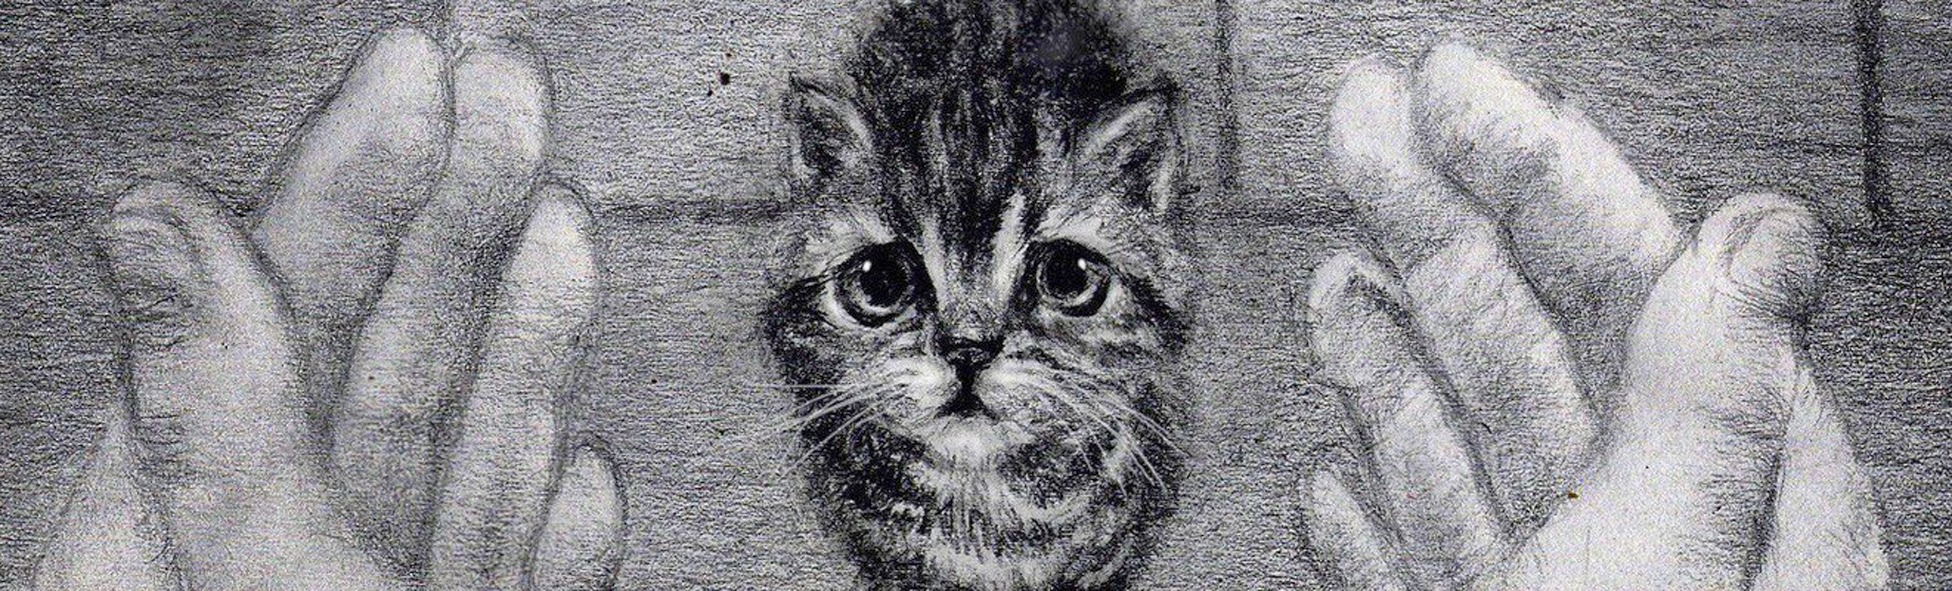 Плакат бездомные коты